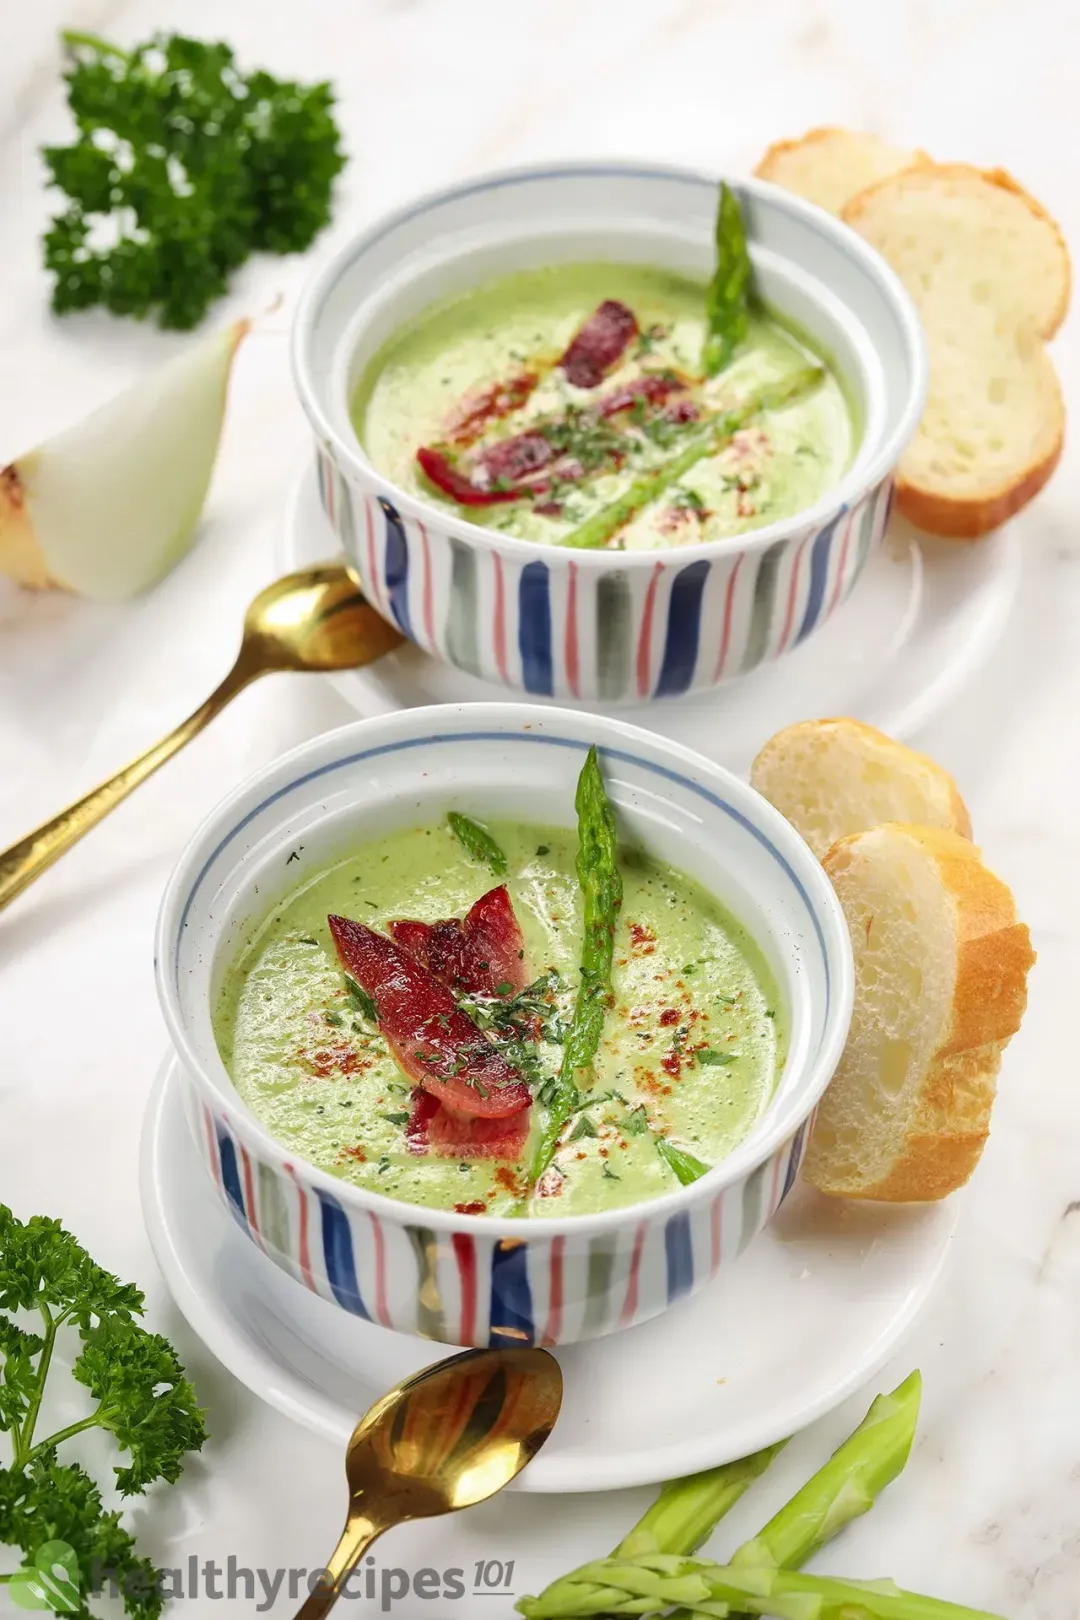 How to Prepare Asparagus for asparagus soup